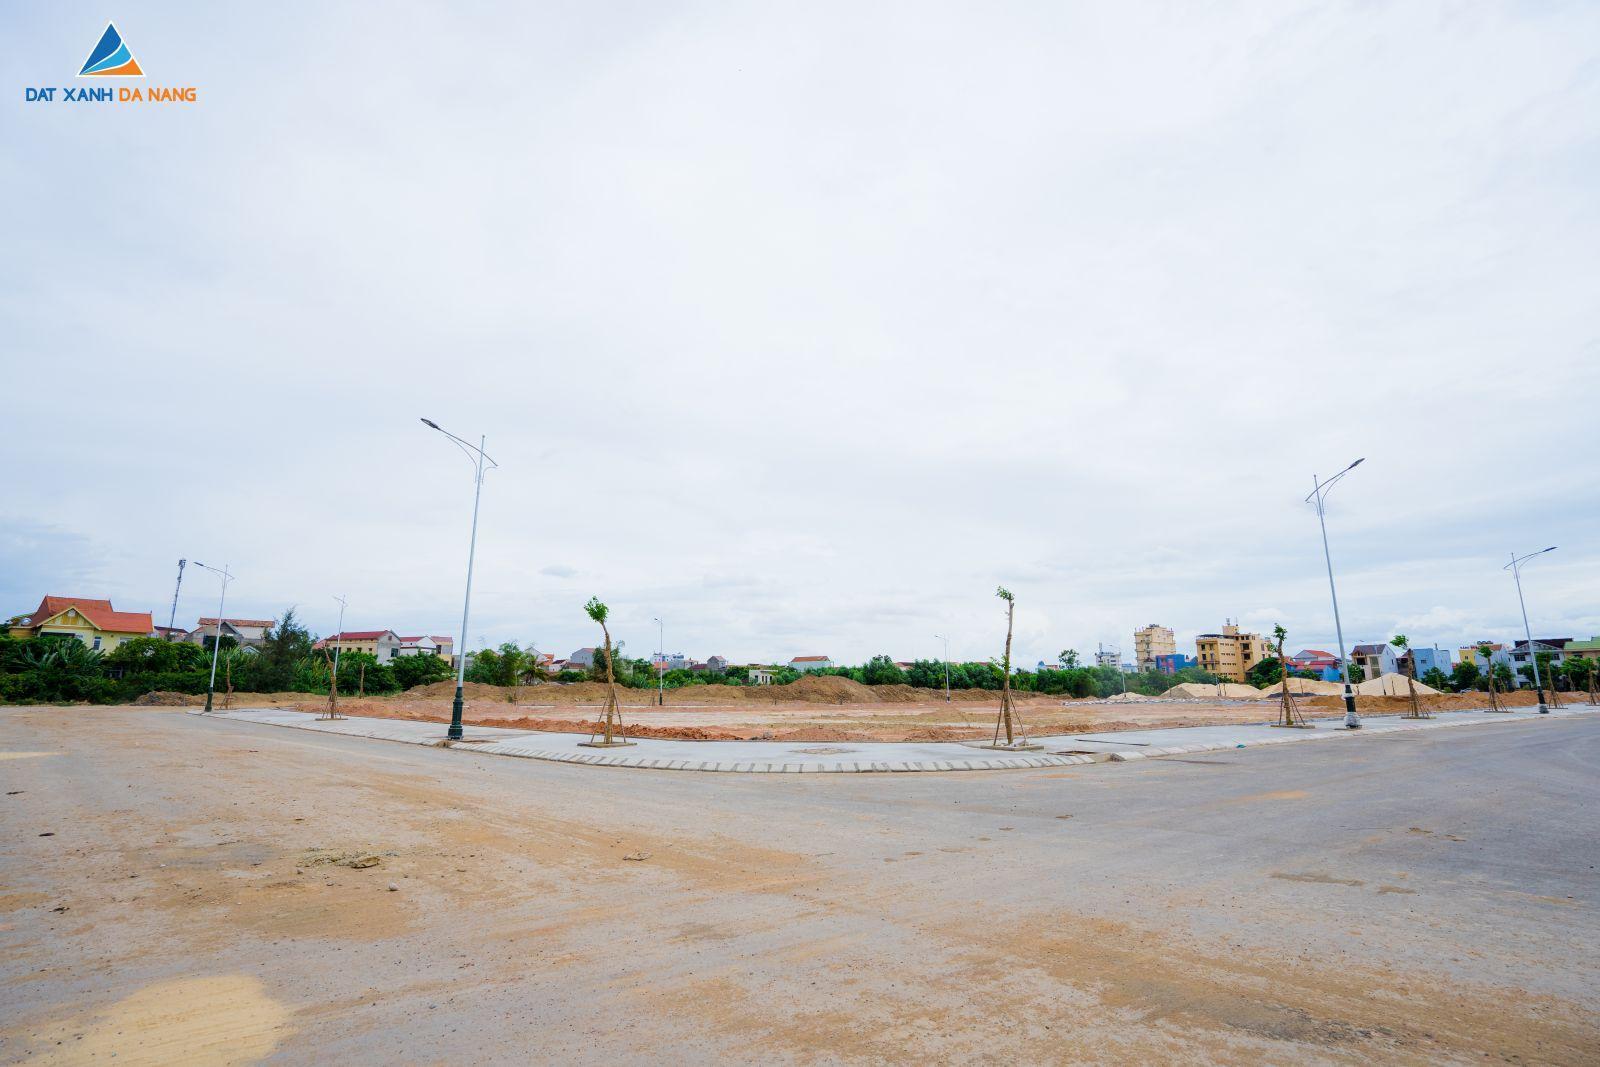 [GÓC CẬP NHẬT] DỰ ÁN KHU ĐÔ THỊ VENUS GARDENIA THÁNG 08/2019 - Viet Nam Smart City